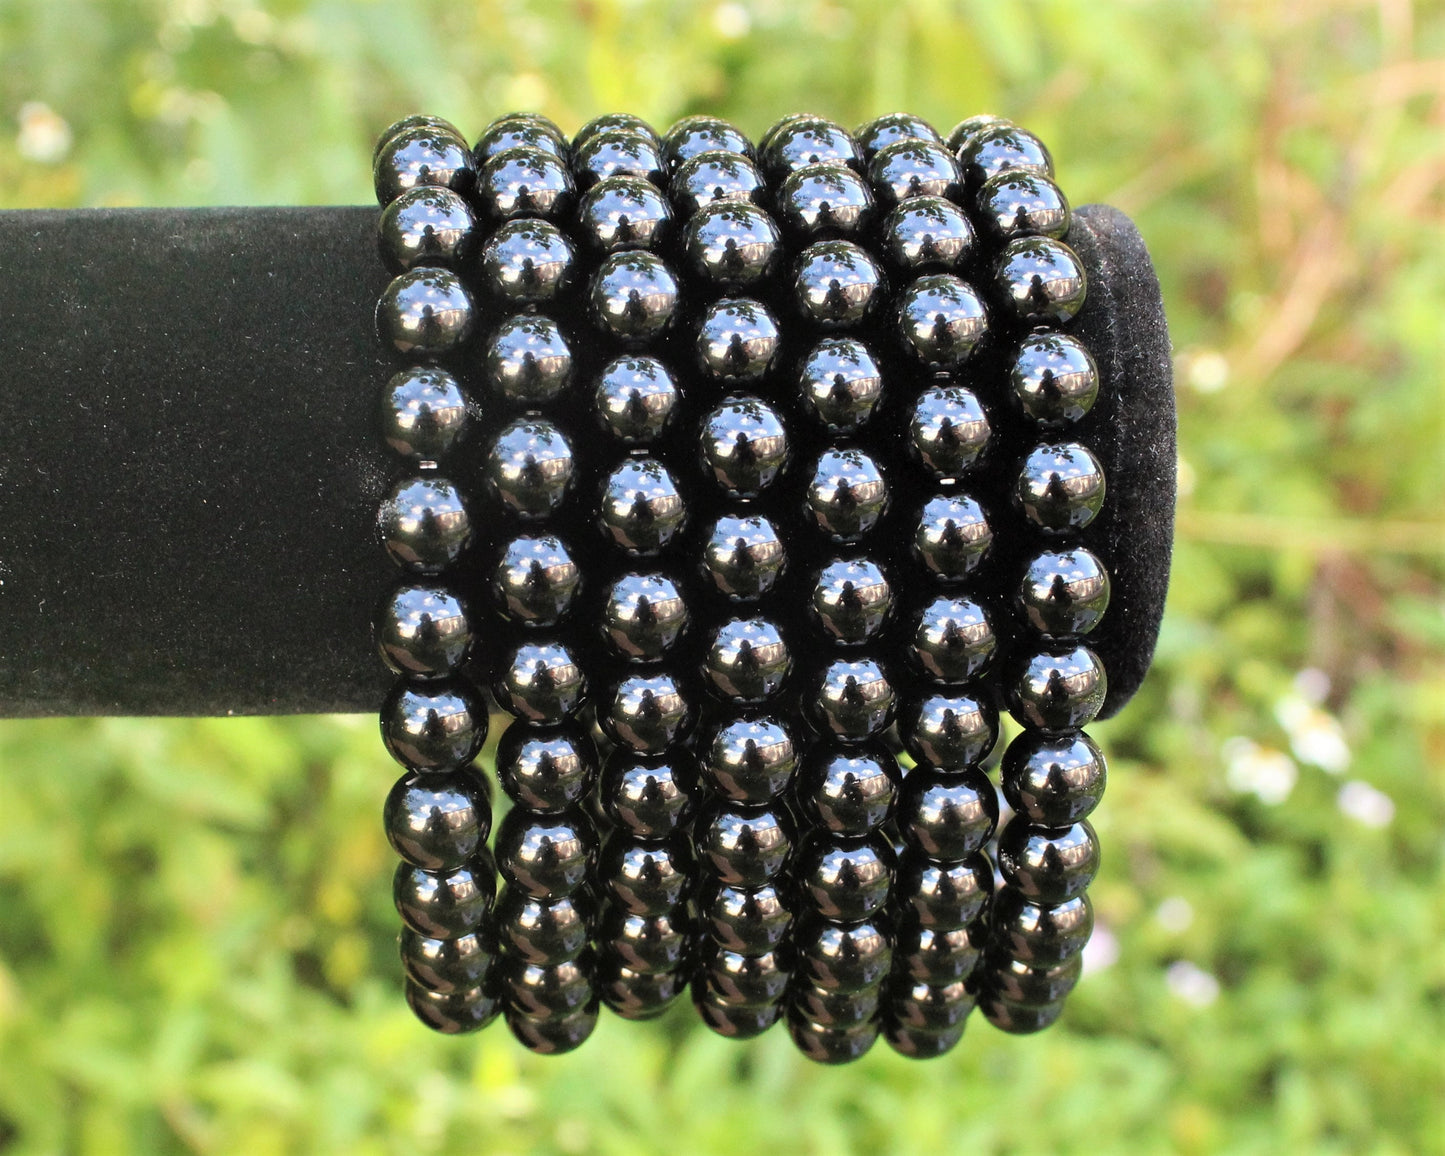 Black Onyx Bead Bracelet